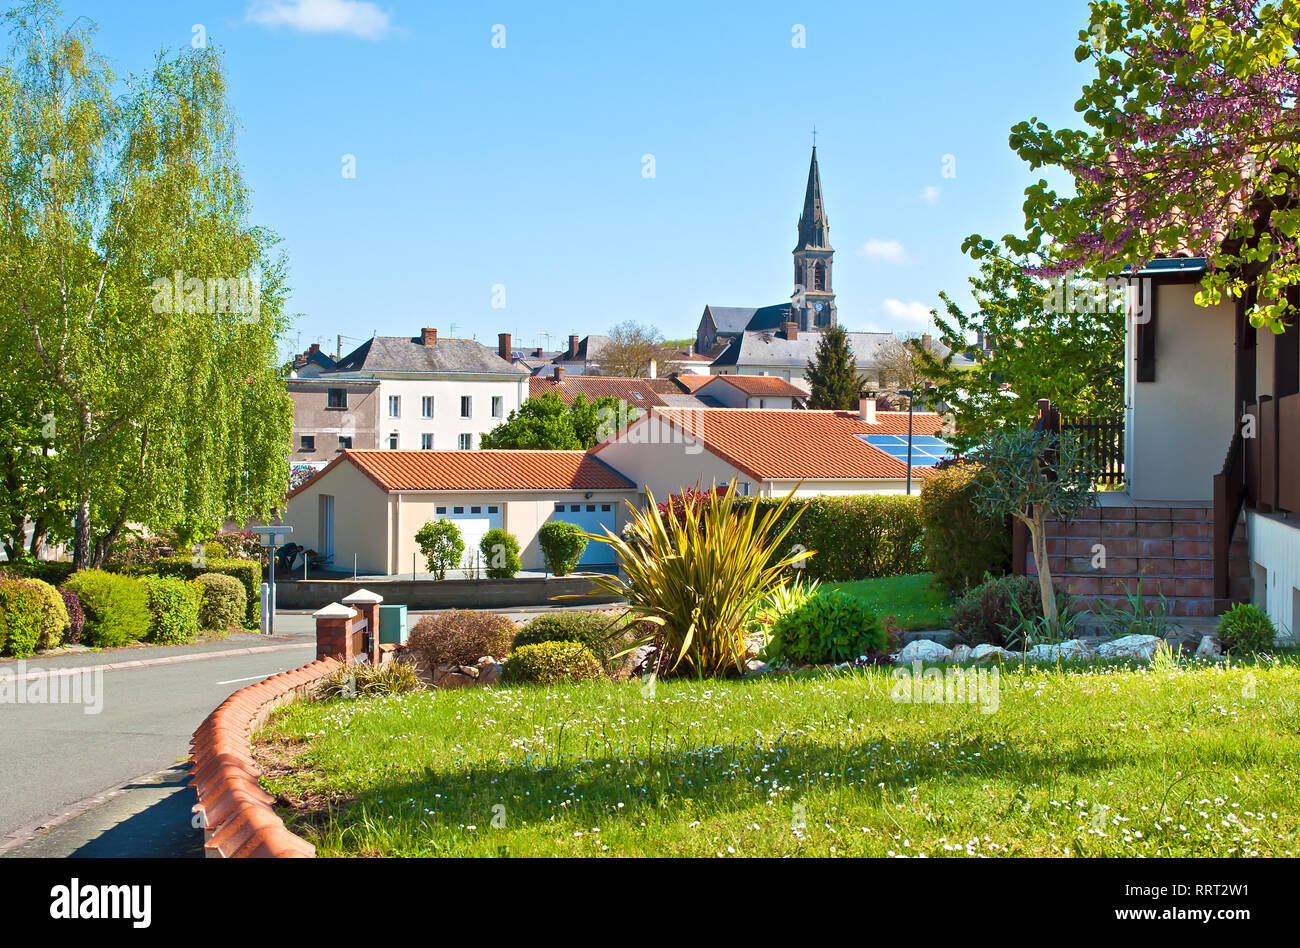 Blick auf eine kleine französische Stadt Neuvy-en-Mauges, Frankreich. Viele Häuser unter grünen Bäumen und die roten Dächer mit zellulären Panels, Turm einer Kirche. Warme spri Stockfoto